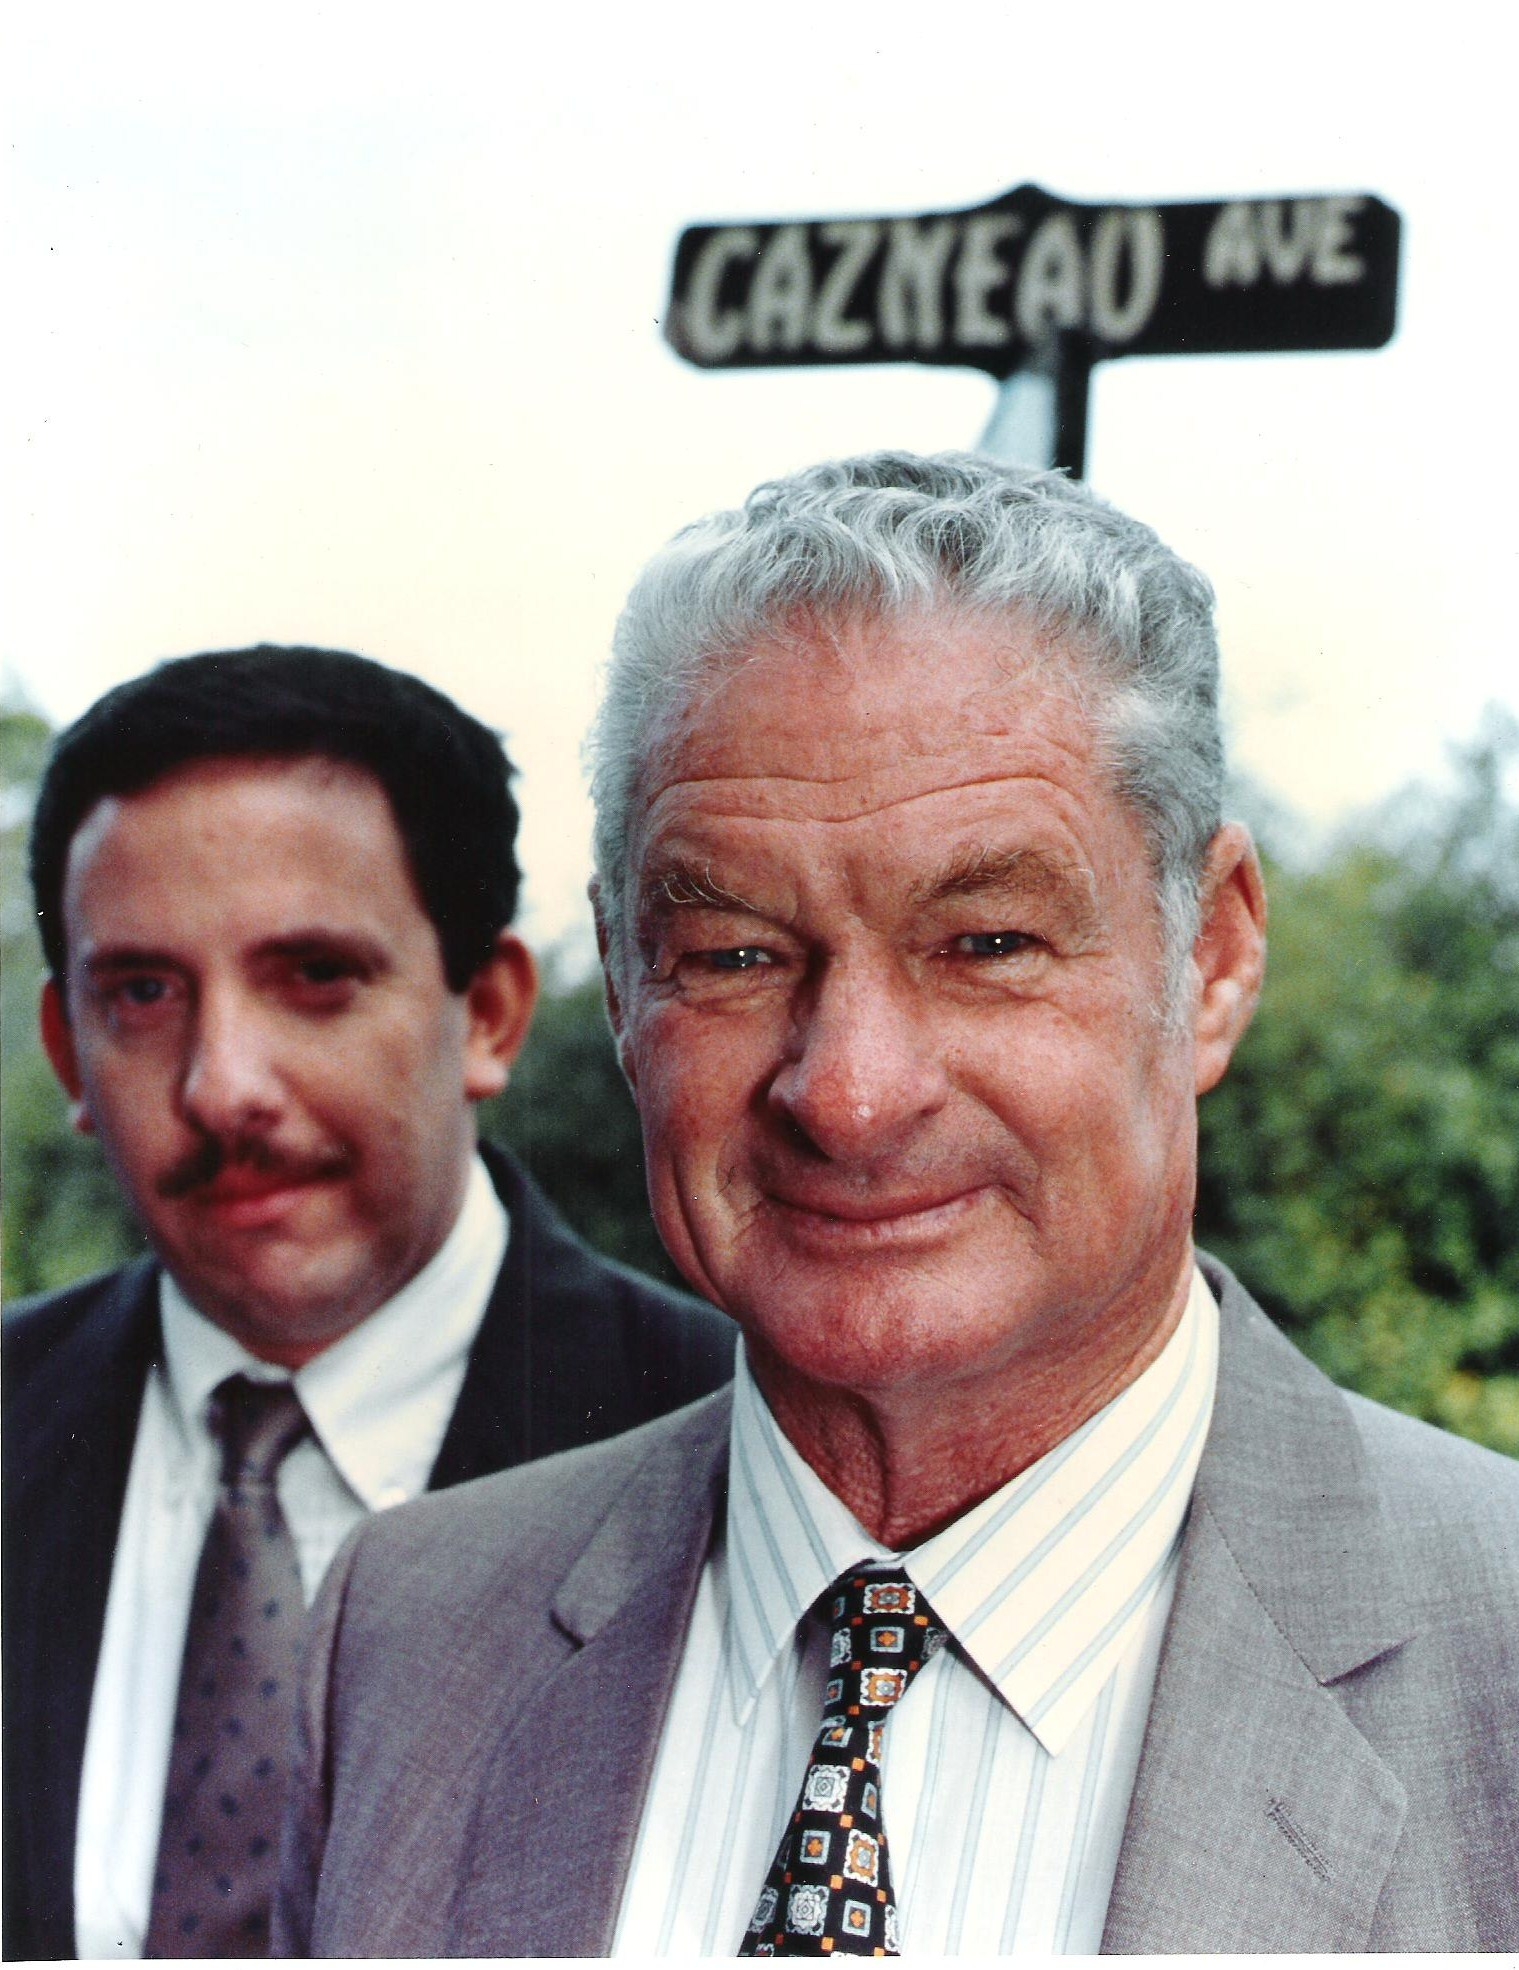 Patrick & Don Cazneau, California 1992